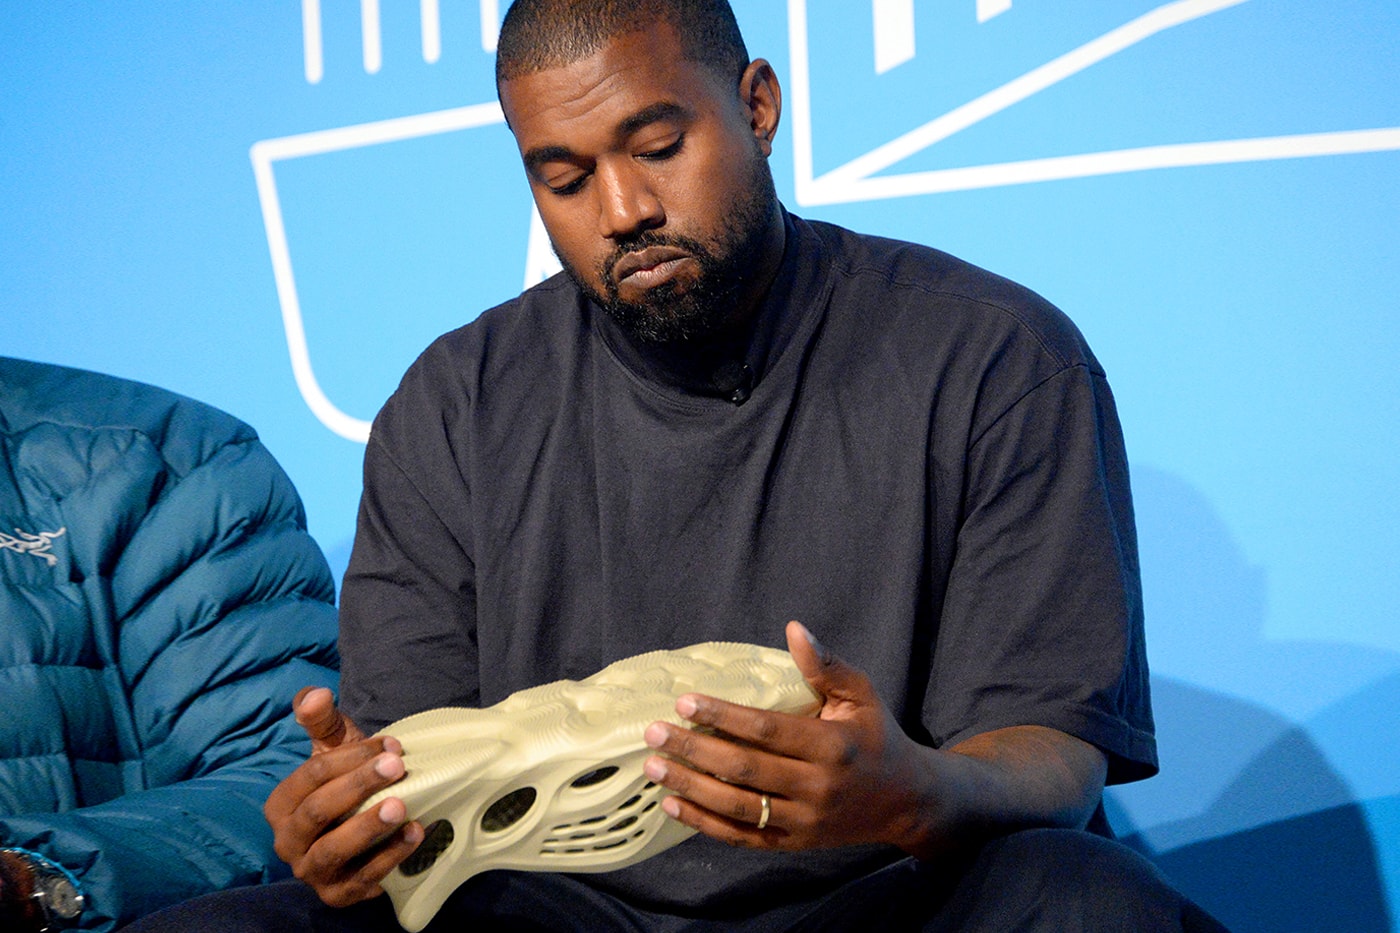 Kanye West adidas $1 Billion USD YEEZY Buyout Claim Buy Shoe Factory Info West